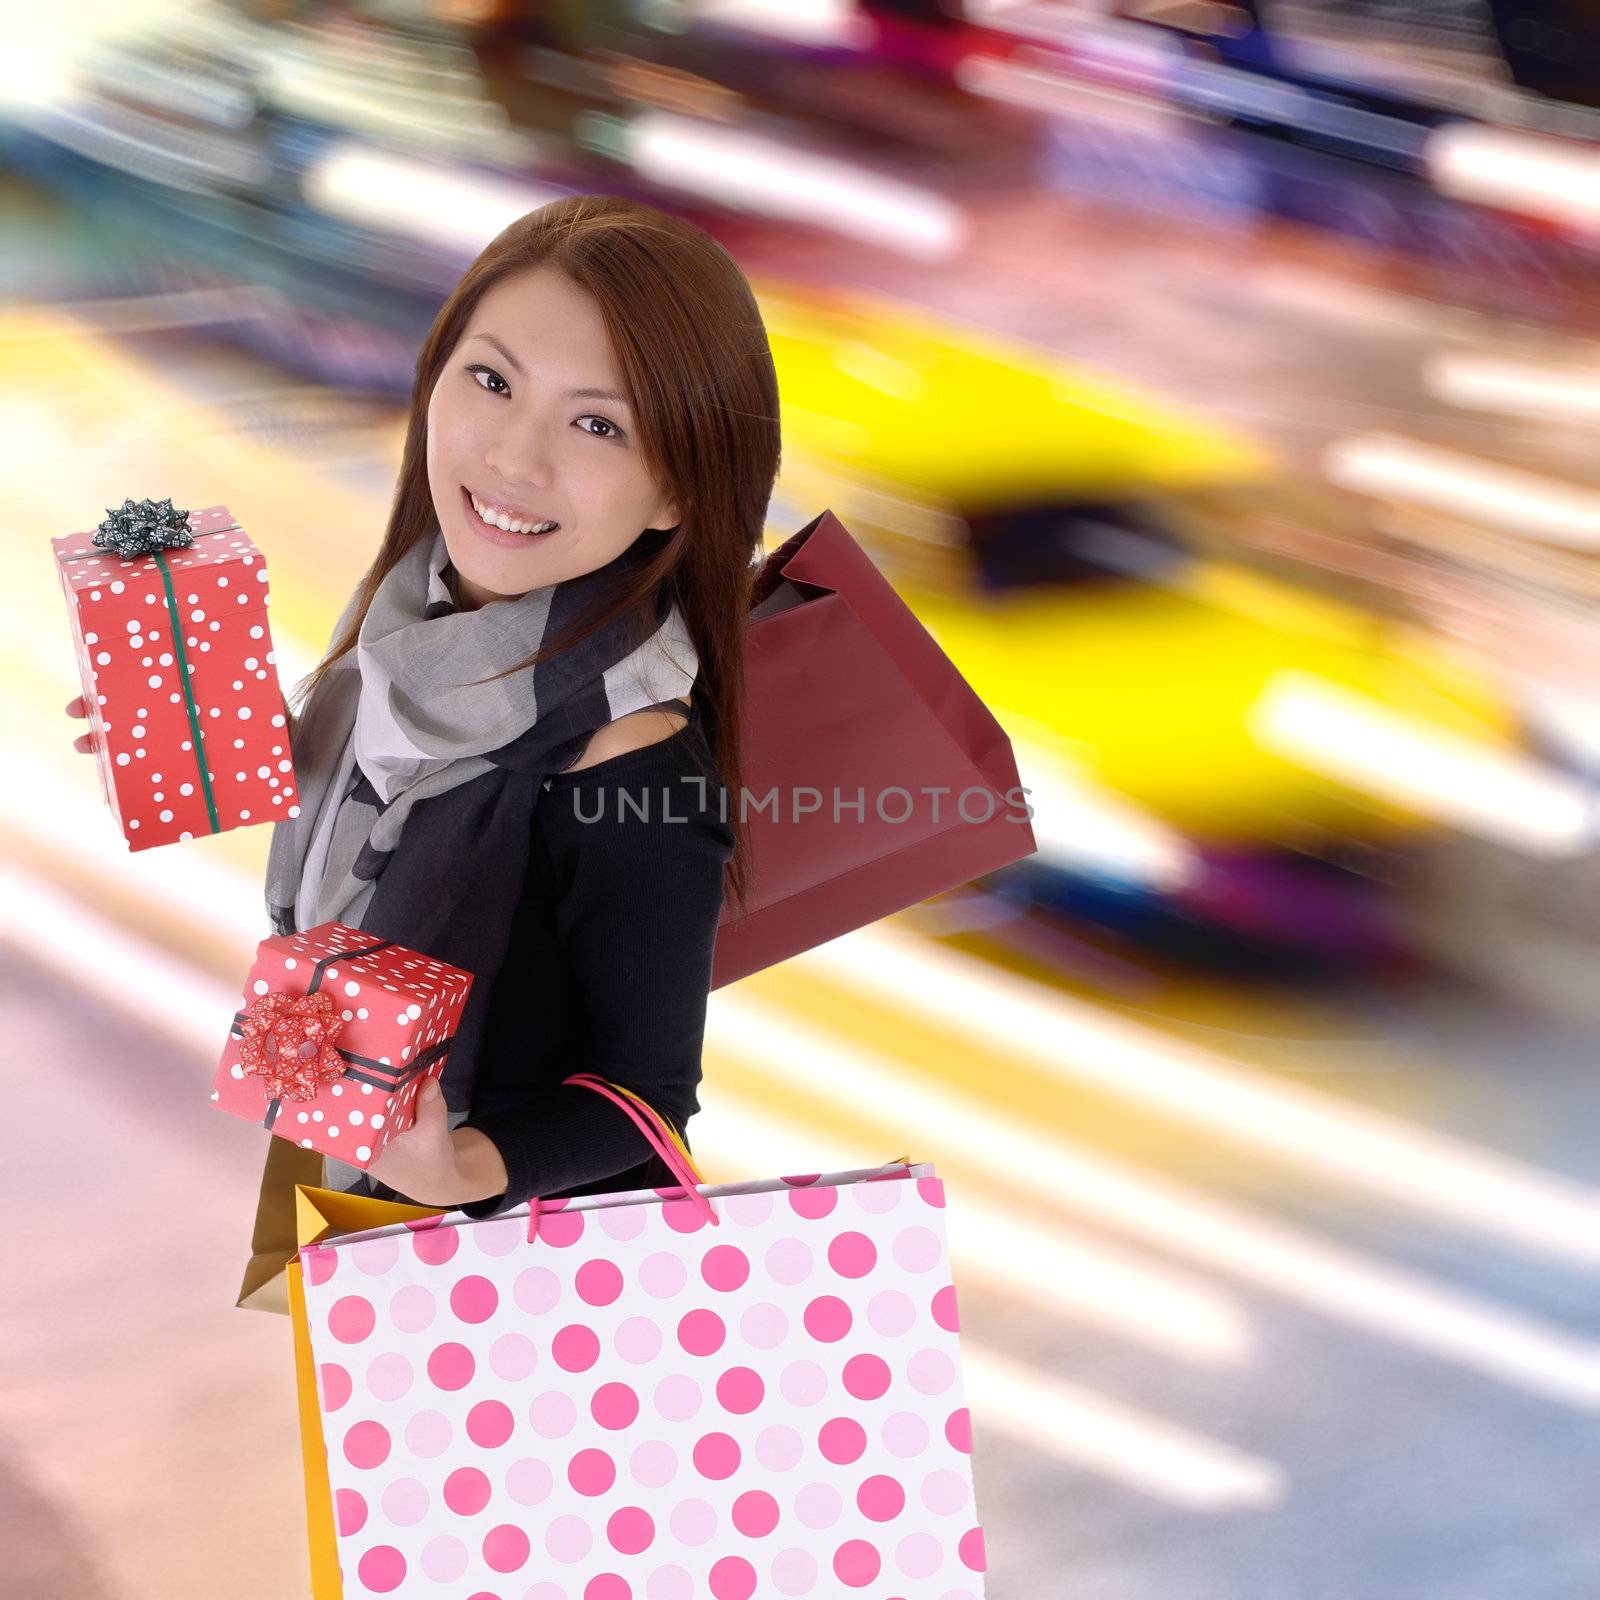 Happy shopping woman by elwynn